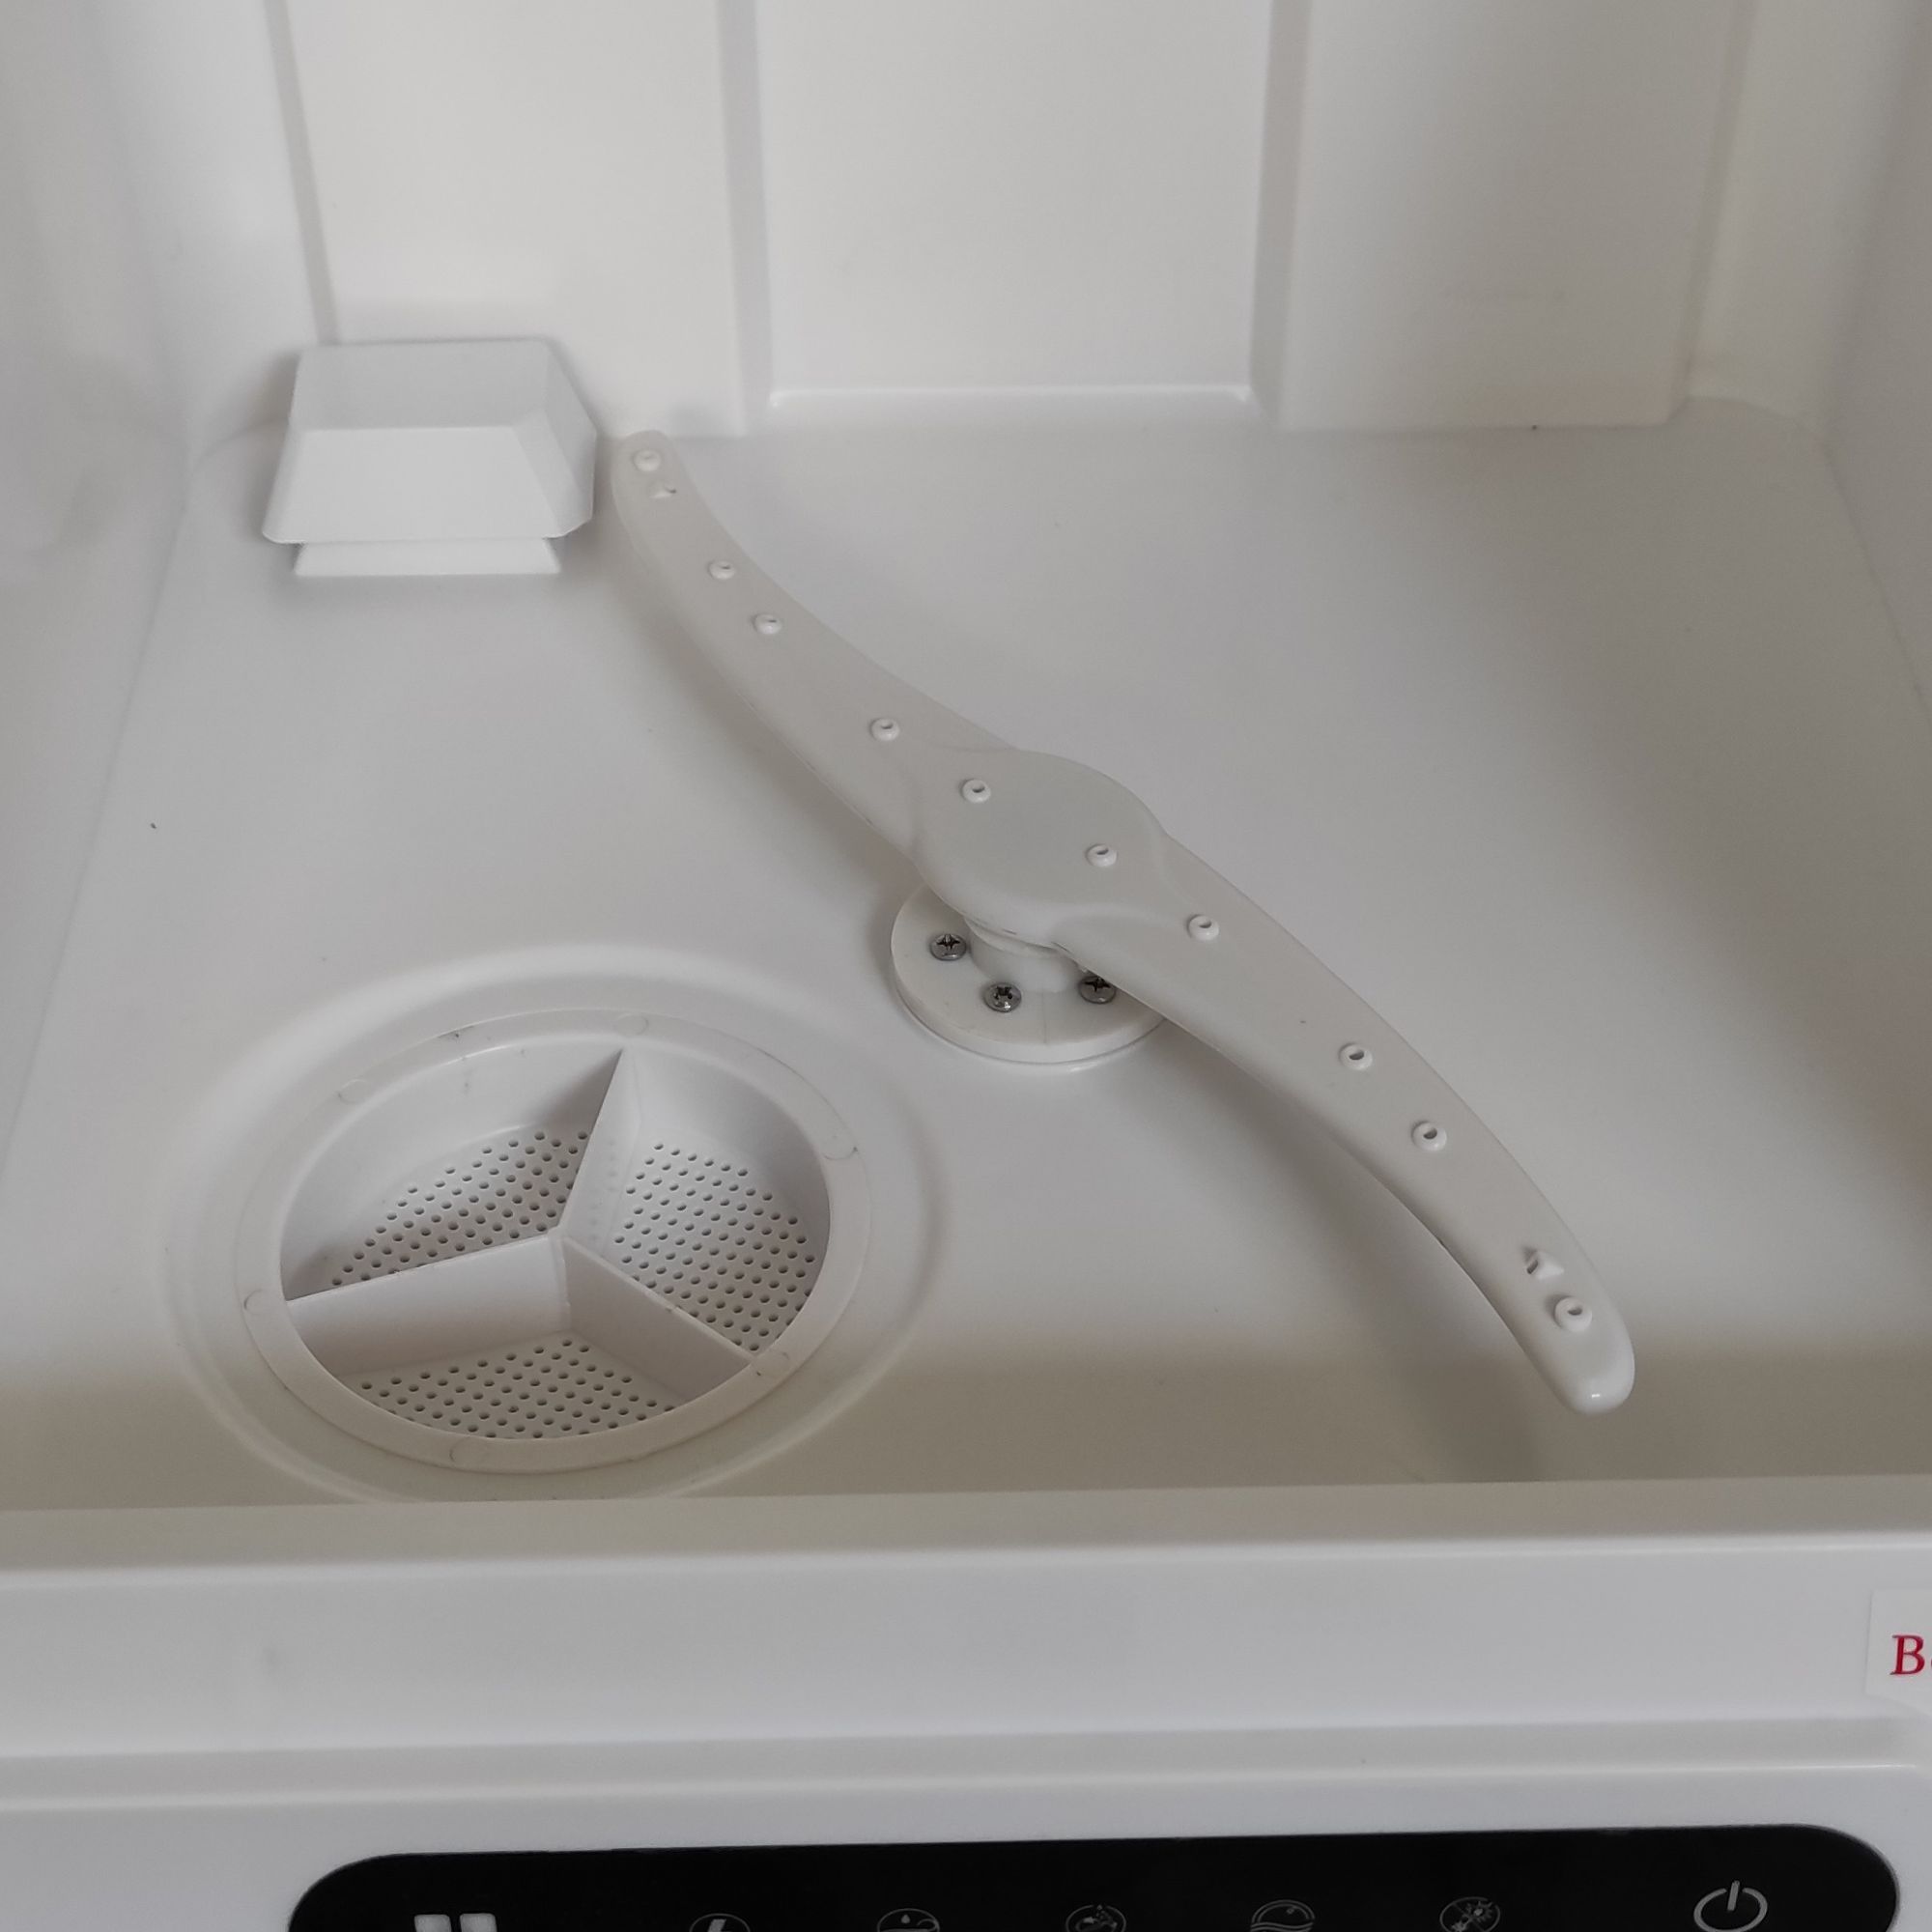 Máy rửa chén 6 bộ cao cấp Buyfastcart K1 loại nhỏ để bàn dành cho hộ gia đình, tự động khử trùng và sấy khô thông minh không cần lắp đặt - Hàng chính hãng